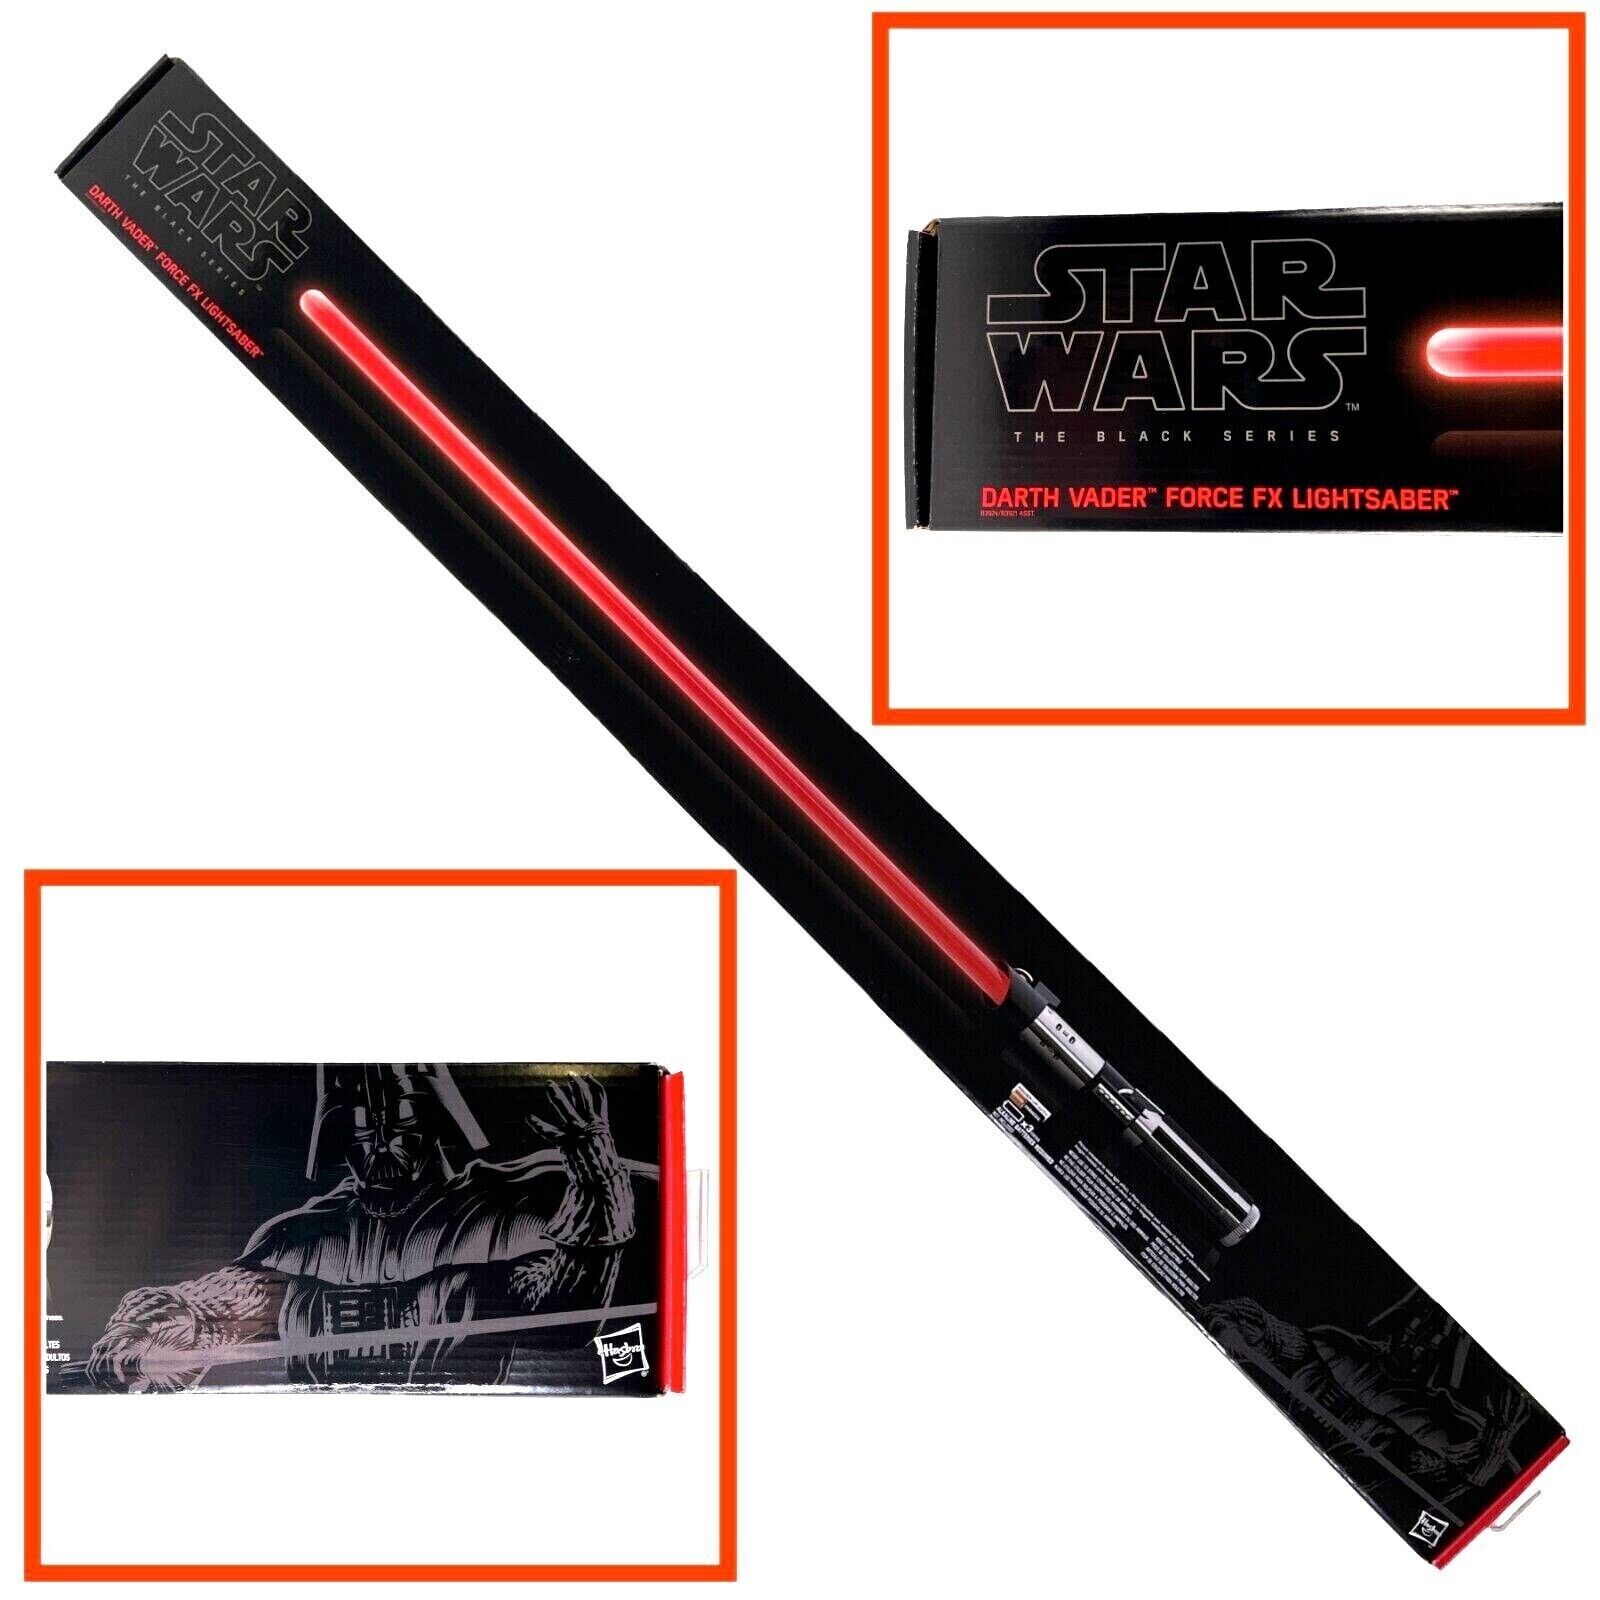 Star Wars Black Series Darth Vader Force FX 02 Lightsaber Red Hasbro Sealed